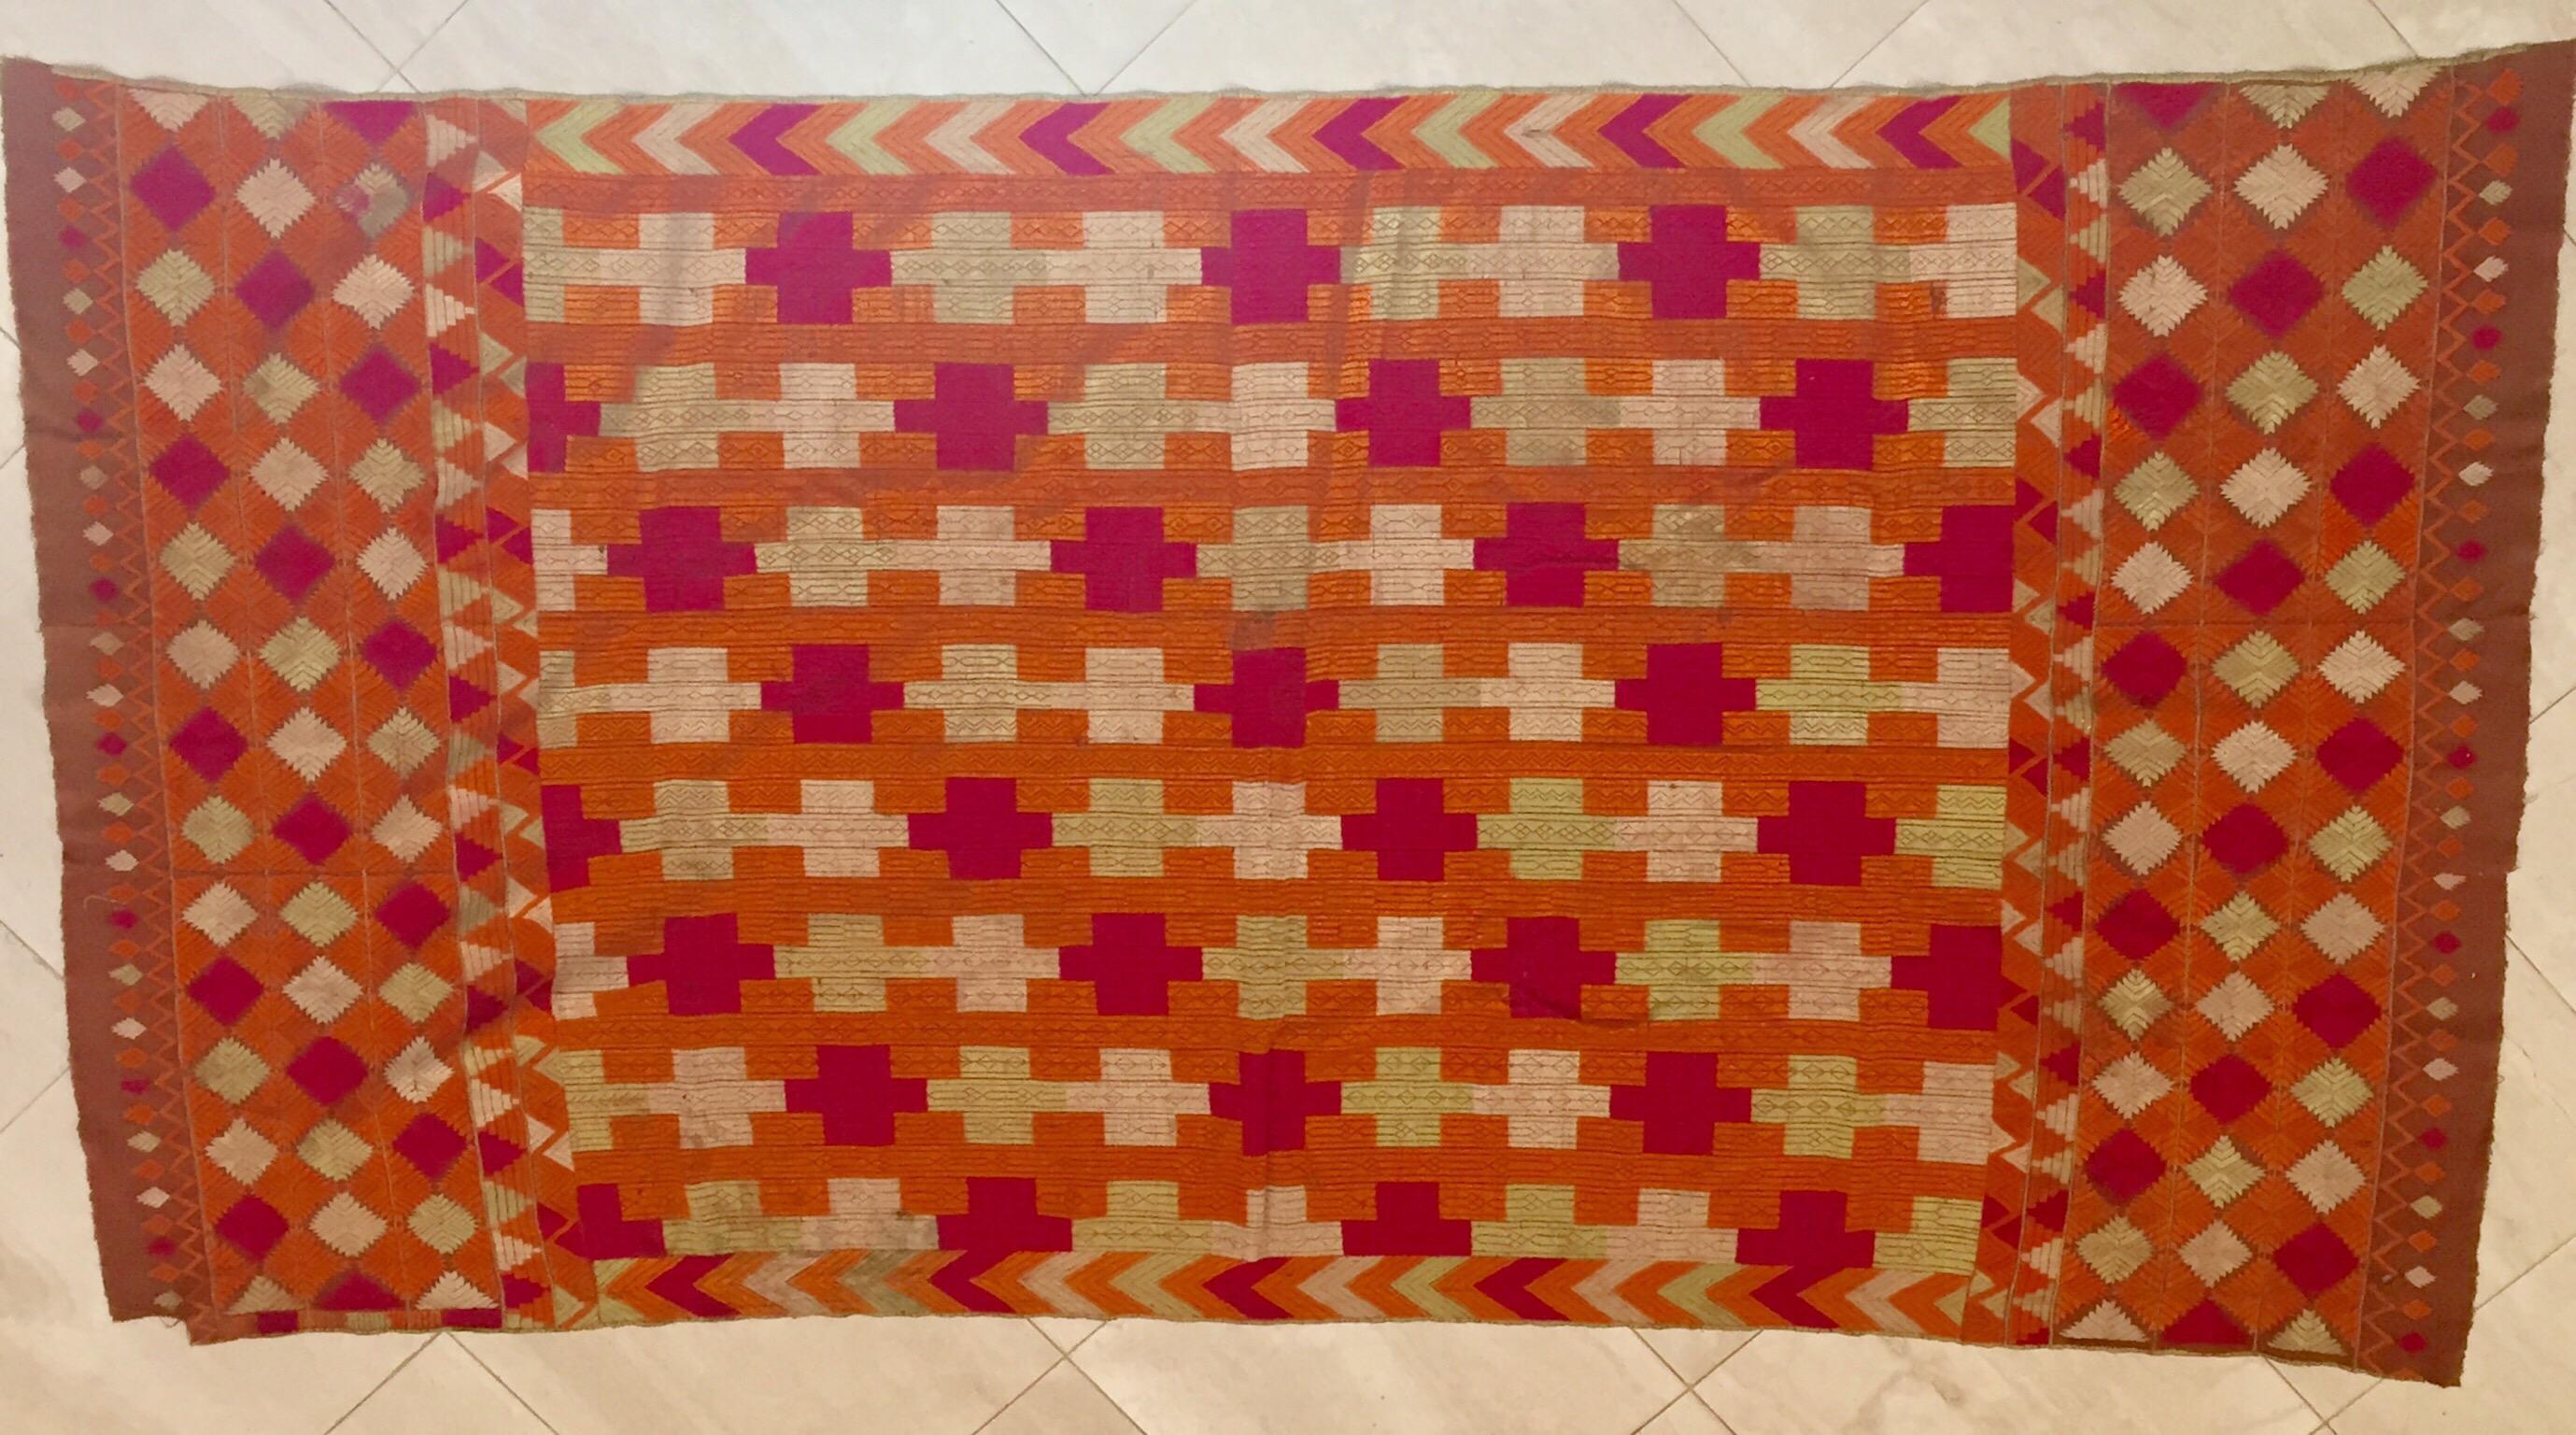 Ein seltenes, in Seide gesticktes Muster auf einem handgewebten Baumwollgrund.
Der Punjab ist bekannt für seine Phulkaris. Die Stickerei ist mit Seidengarn auf grobem, handgewebtem Baumwollstoff ausgeführt. Auf den Phulkaris sind in der Regel